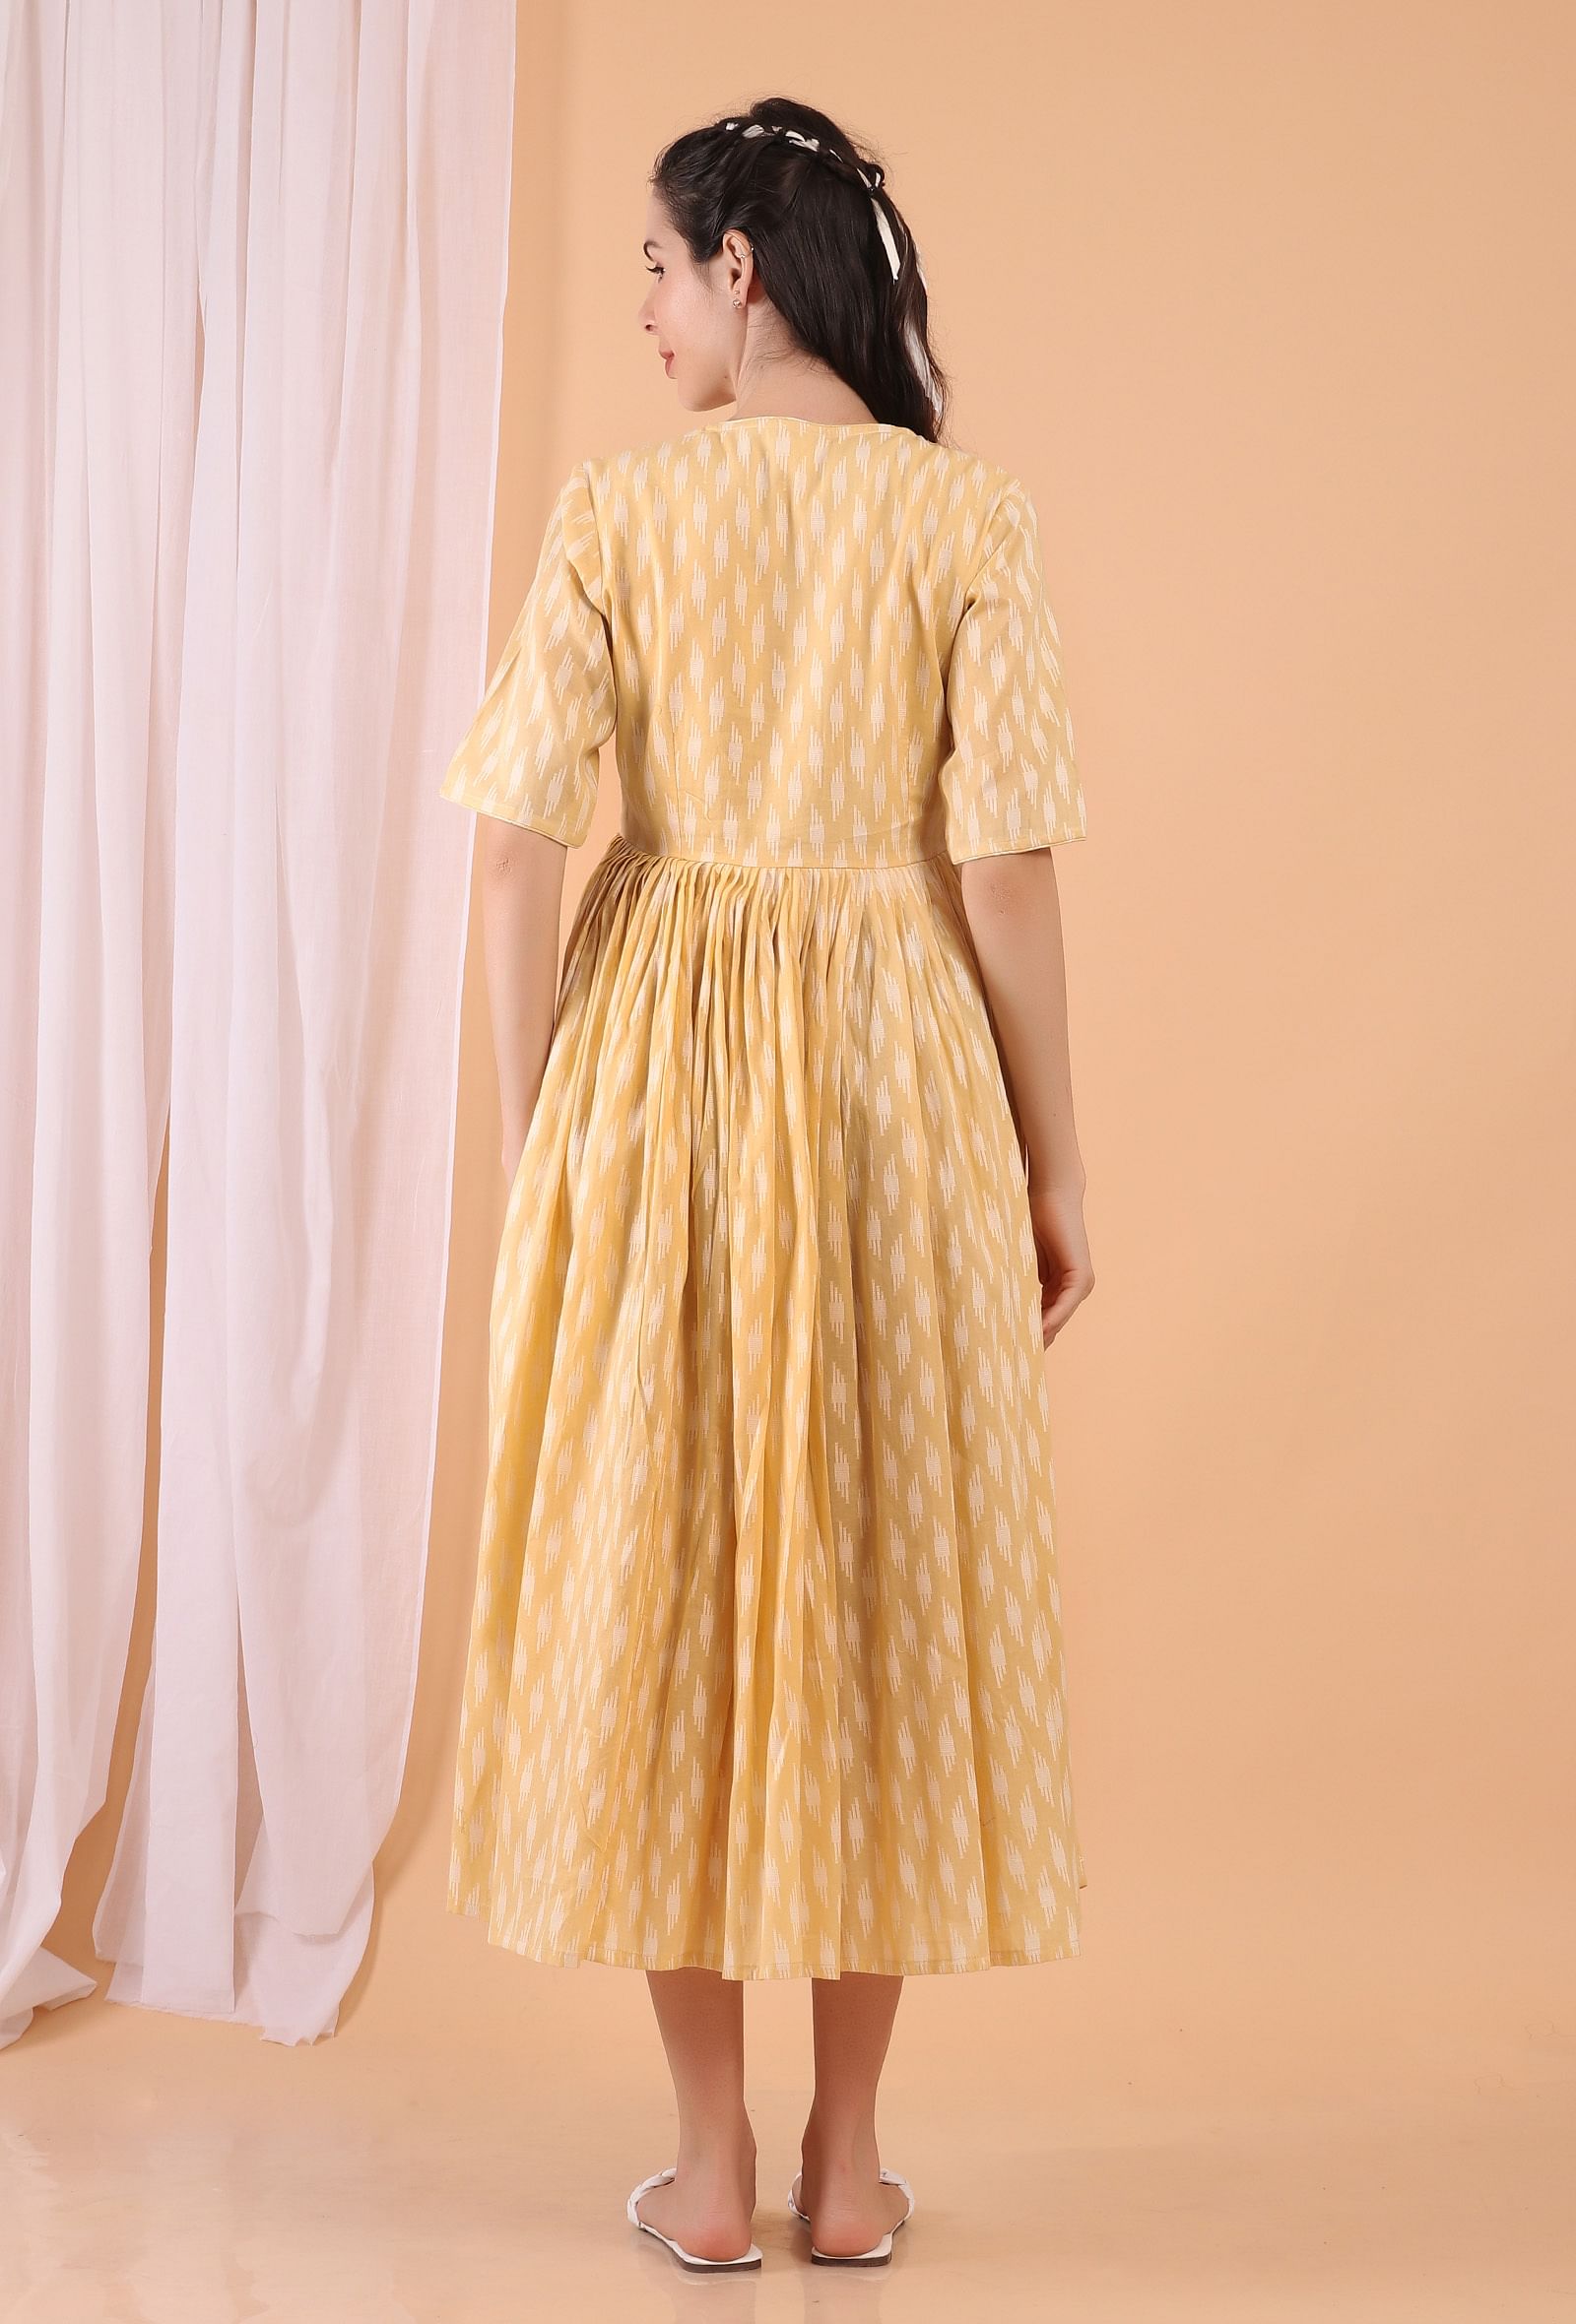 Lemon Tart Yellow Cotton Tiered Gathered Long Dress